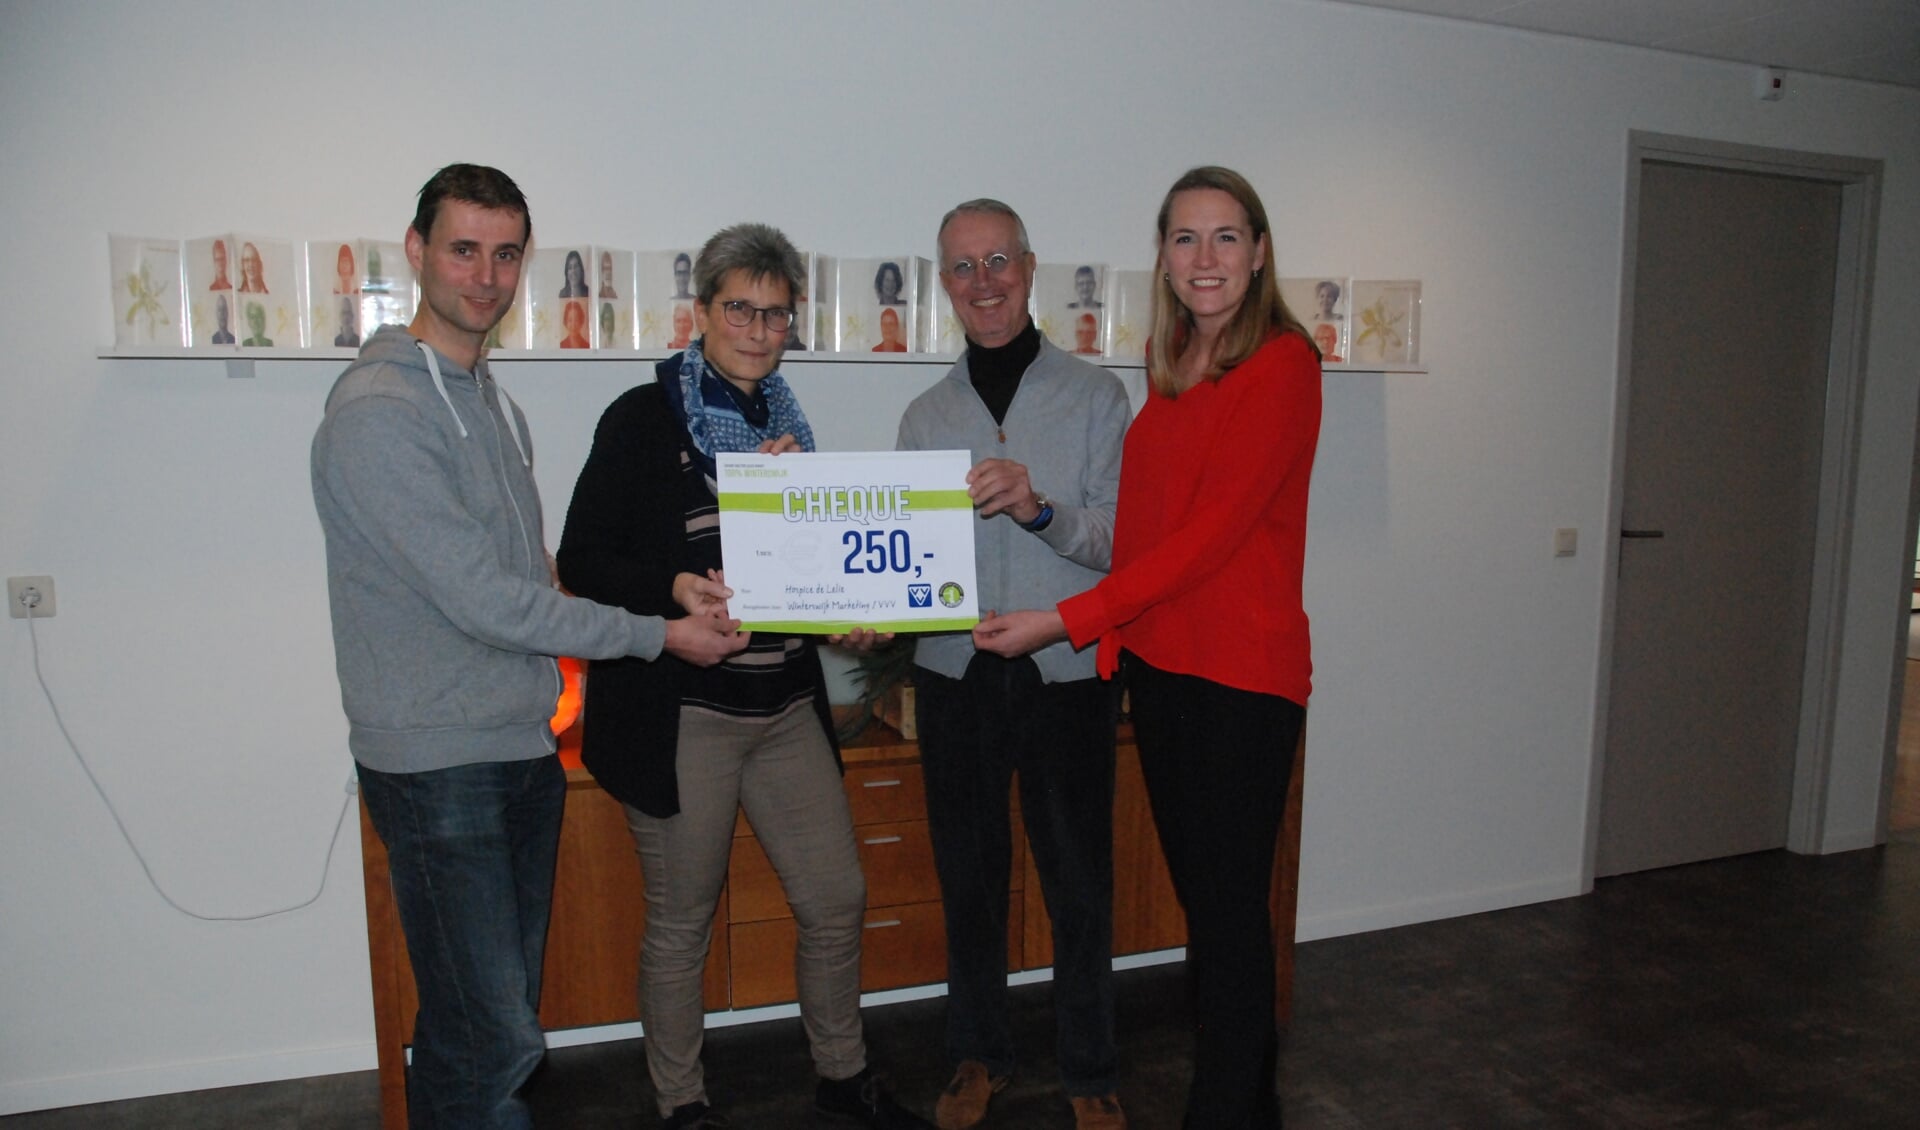 Pieter Navis(links) en Gienne te Gronde (rechts) overhandigen de cheque aan Hans ten Kate en Janny Stronks van Hospicegroep De Lelie. Foto: PR